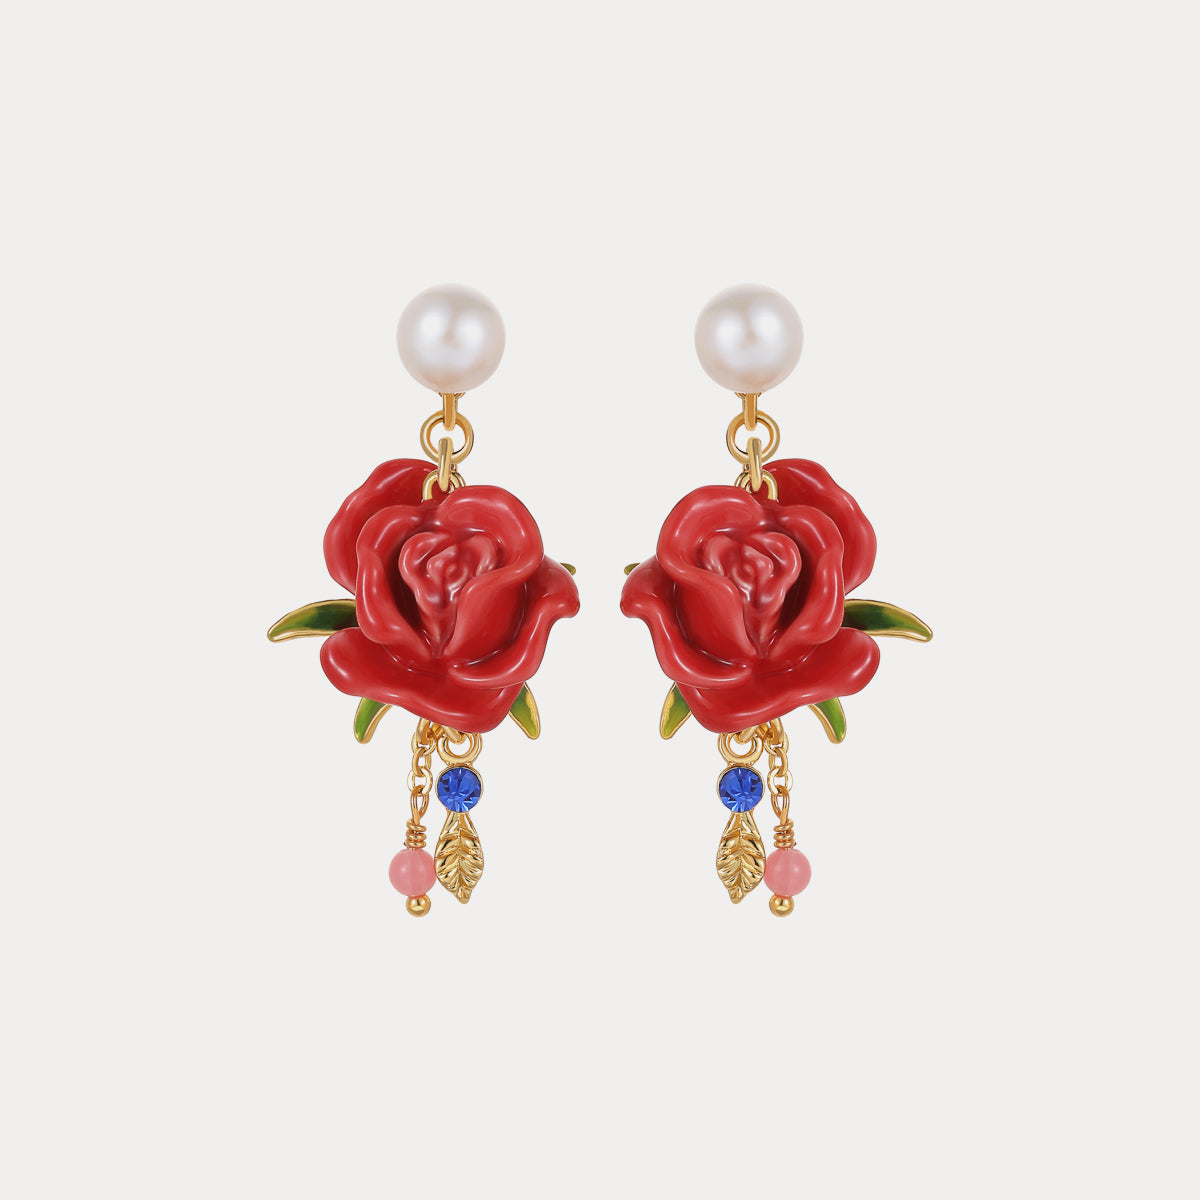 Selenichast rose earrings